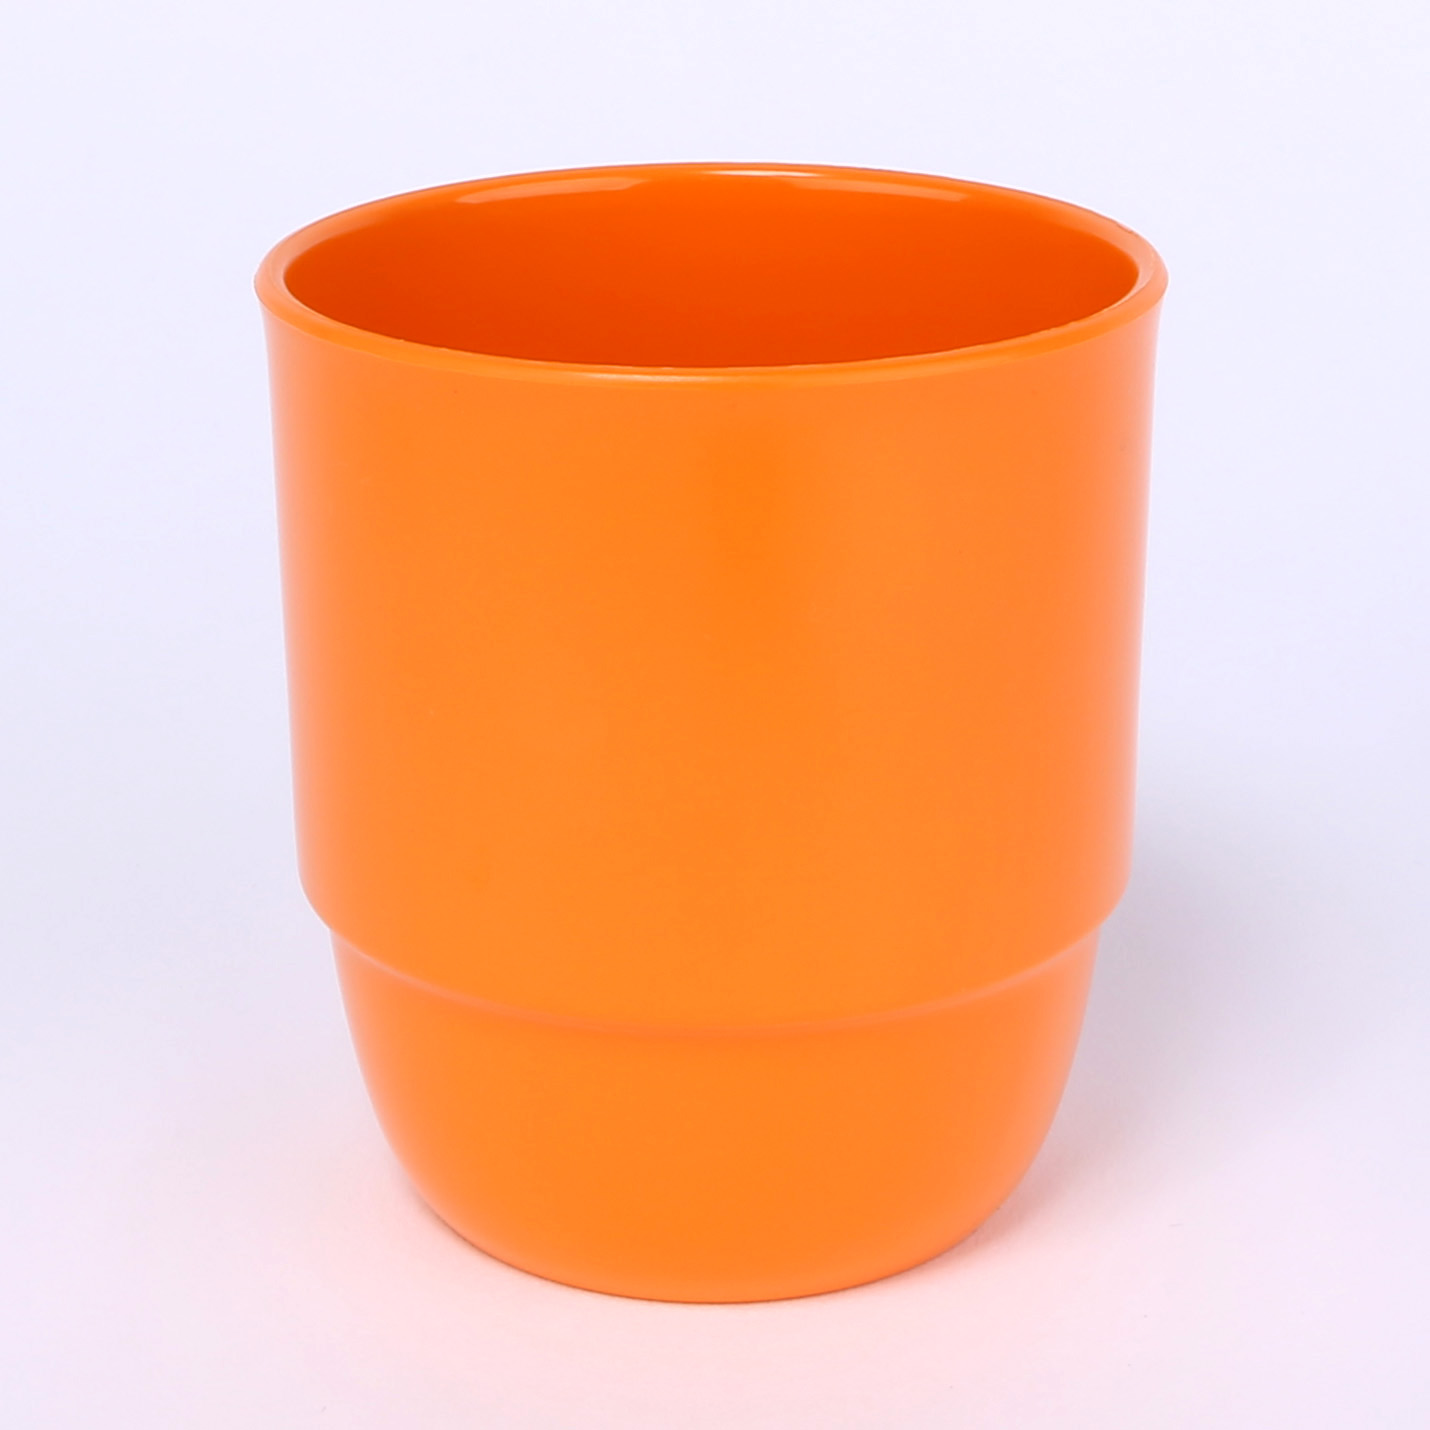 Trinkbecher Zephyr ohne Henkel 0,25 L aus schadstofffreiem Kunststoff in der Farbe orange.